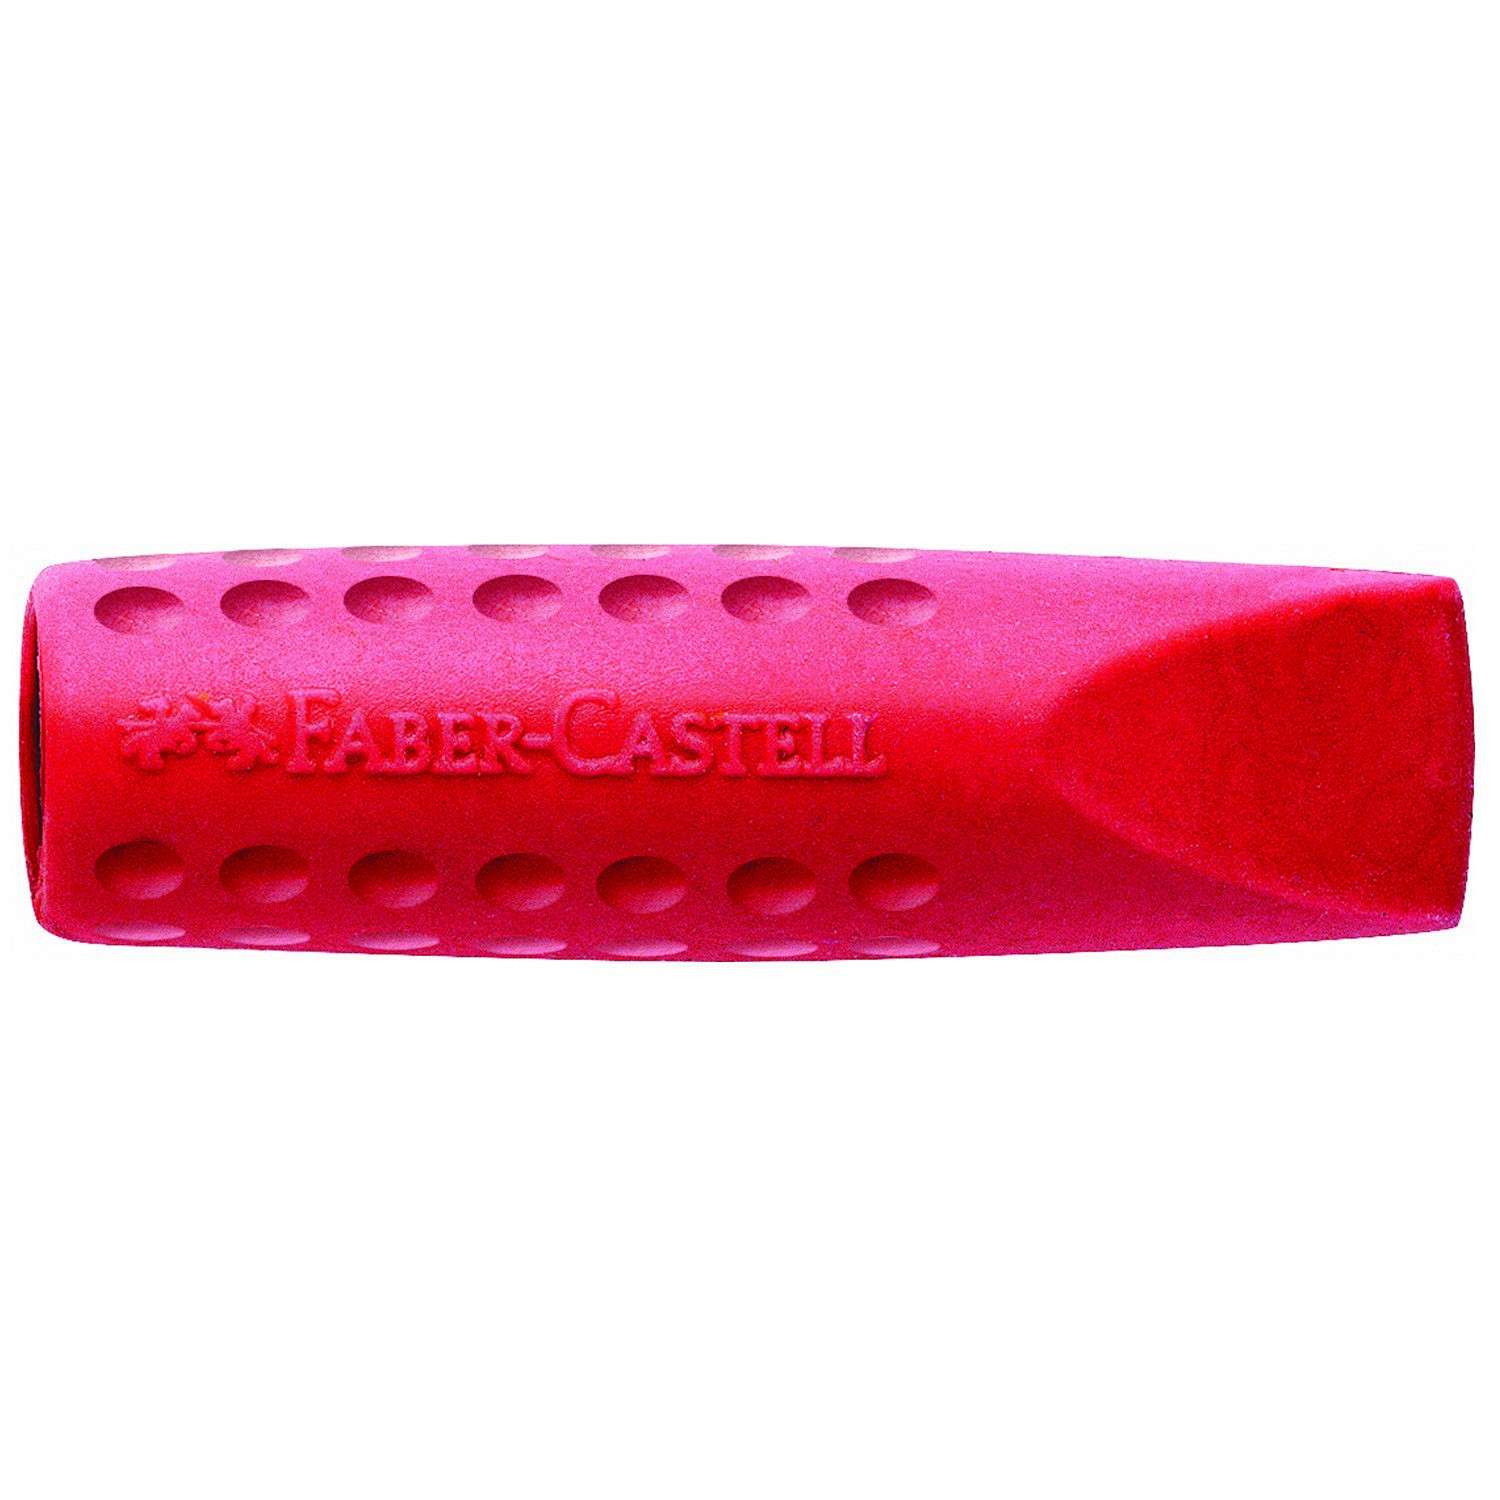 Ластик Faber Castell Grip 2001 колпачок Красный и Синий 187001 - фото 1